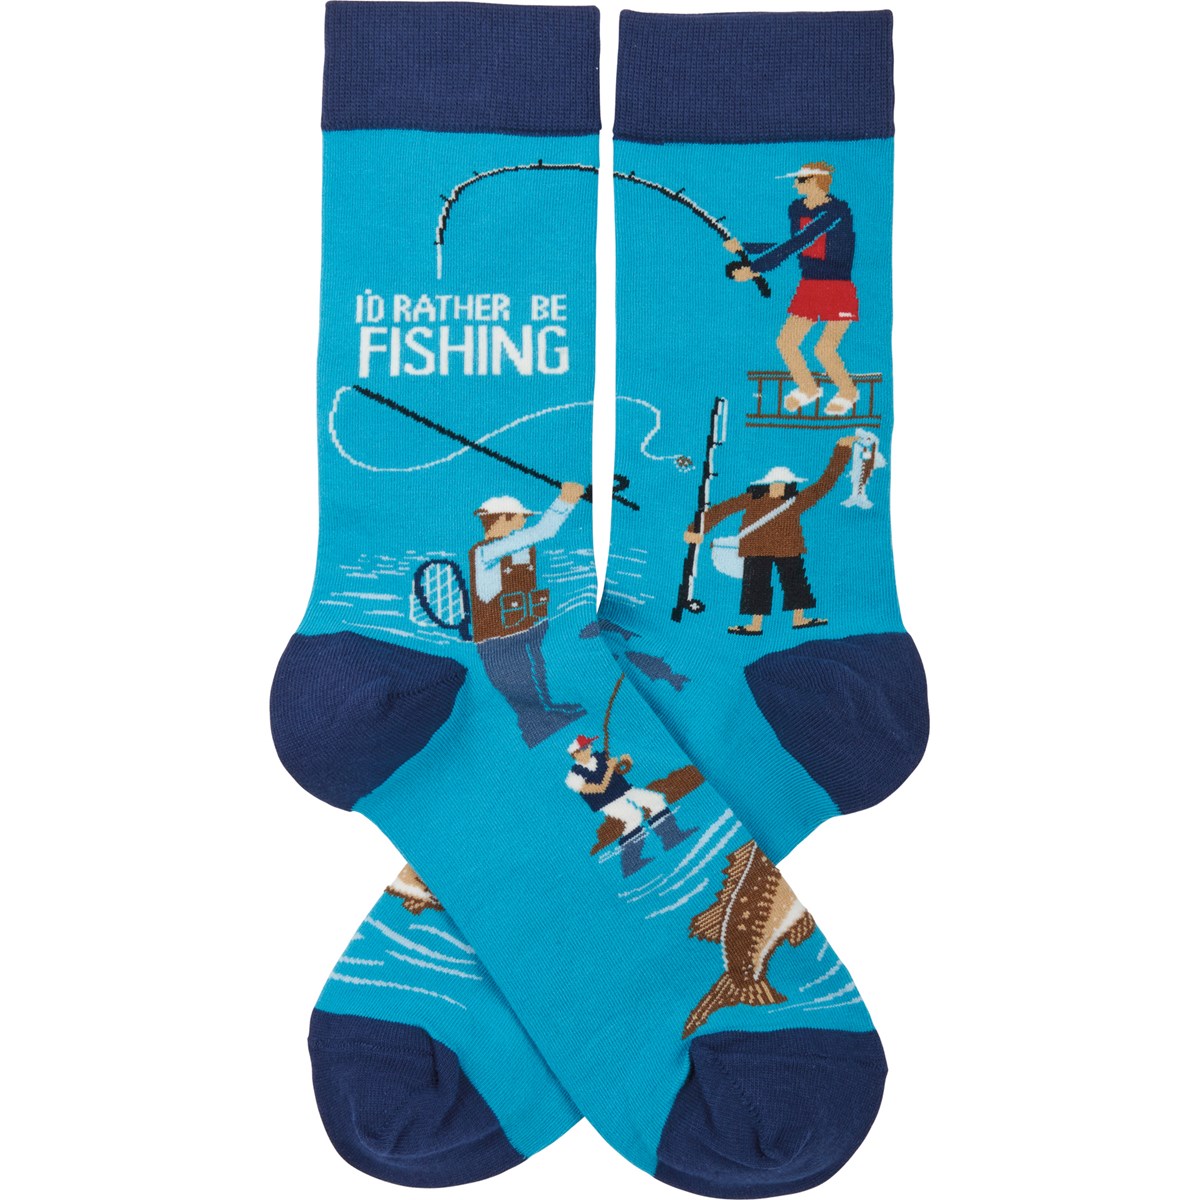 I'd Rather Be Fishing Socks - Cotton, Nylon, Spandex